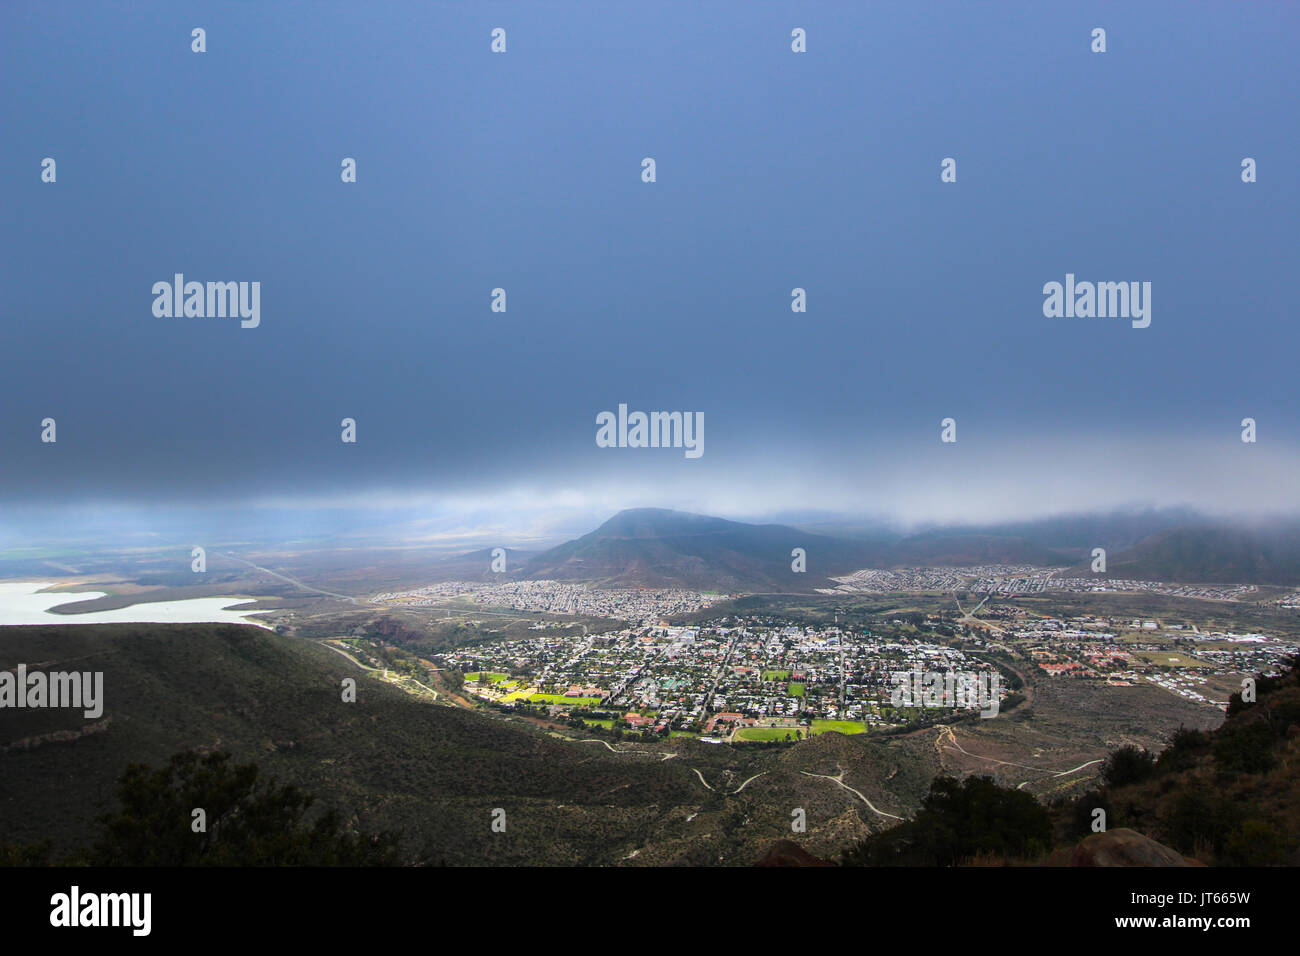 Vallée de la désolation, vue sur la ville de Graaff Reinet durant une tempête, Afrique du Sud Banque D'Images